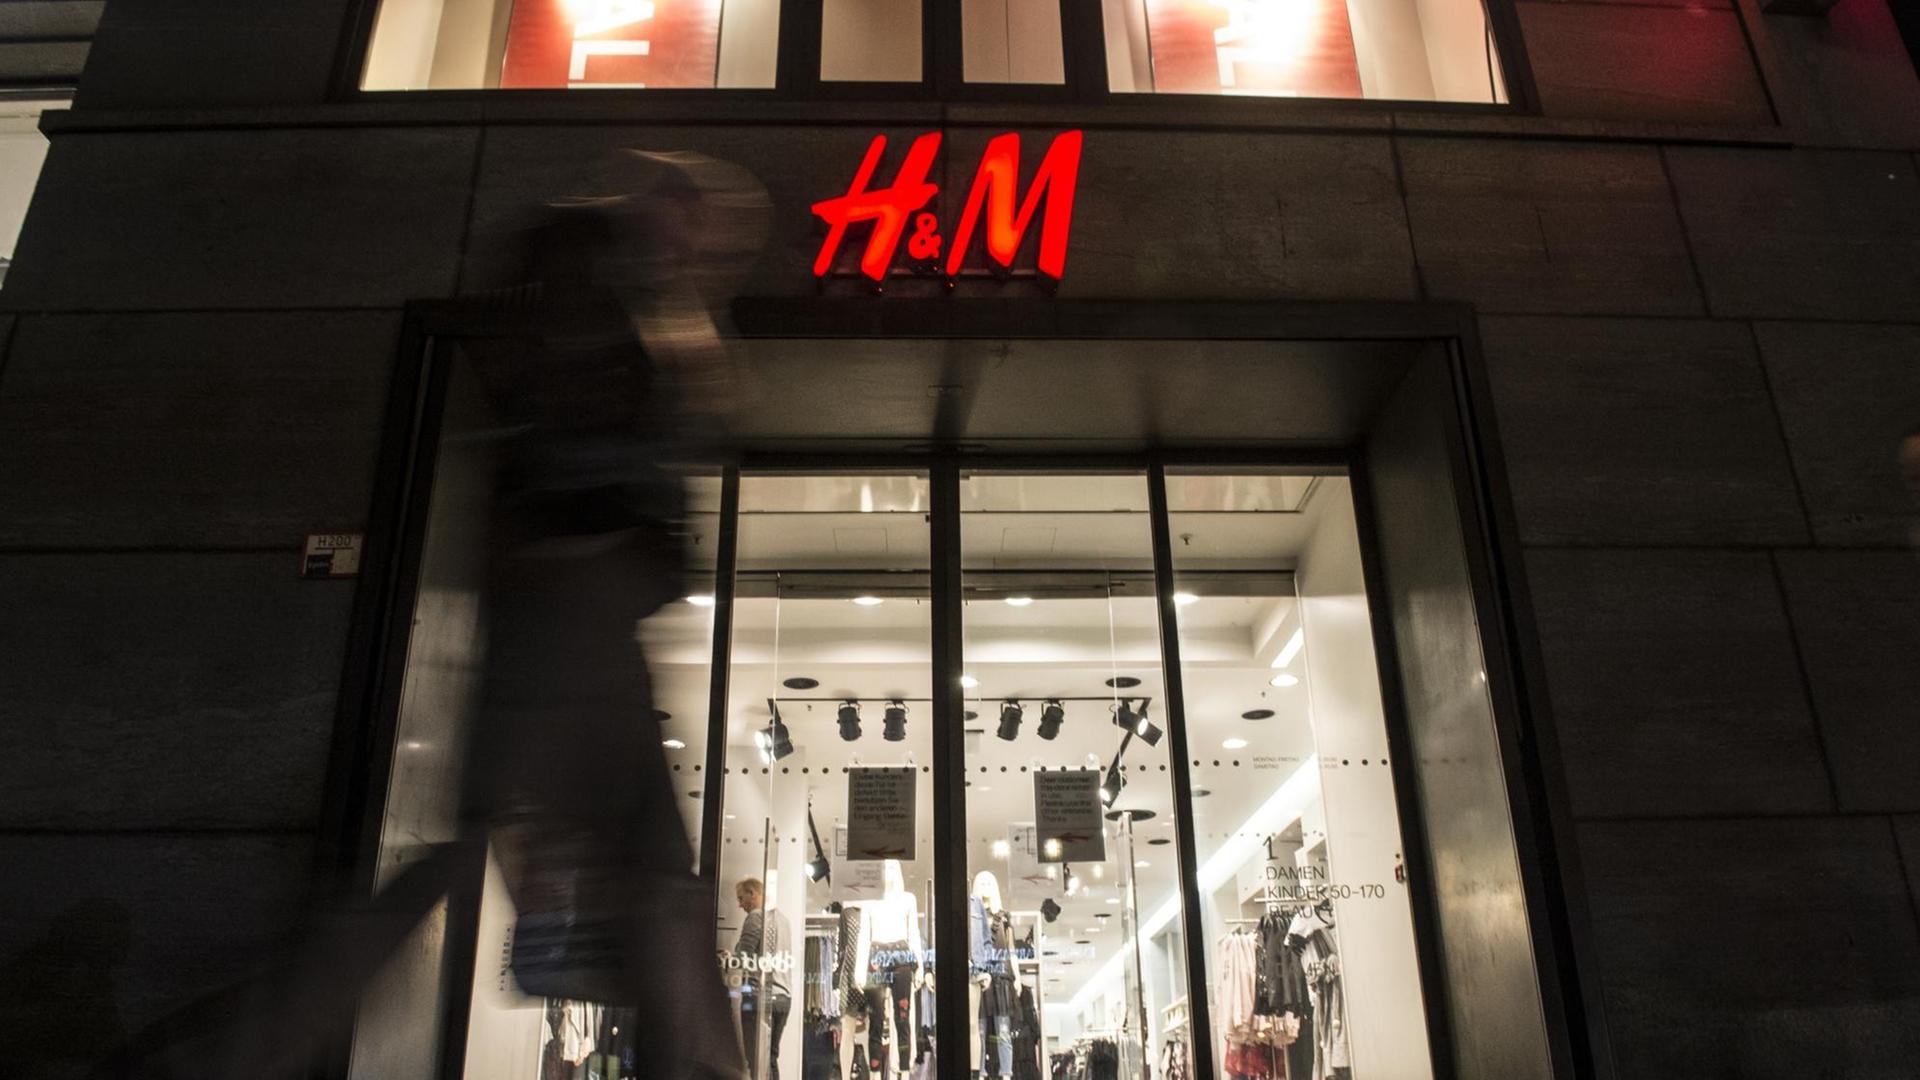 Passanten gehen am 01.02.2017 in Berlin am Abend an einer Filiale der schwedischen Modekette H&M (Hennes & Mauritz) vorbei.